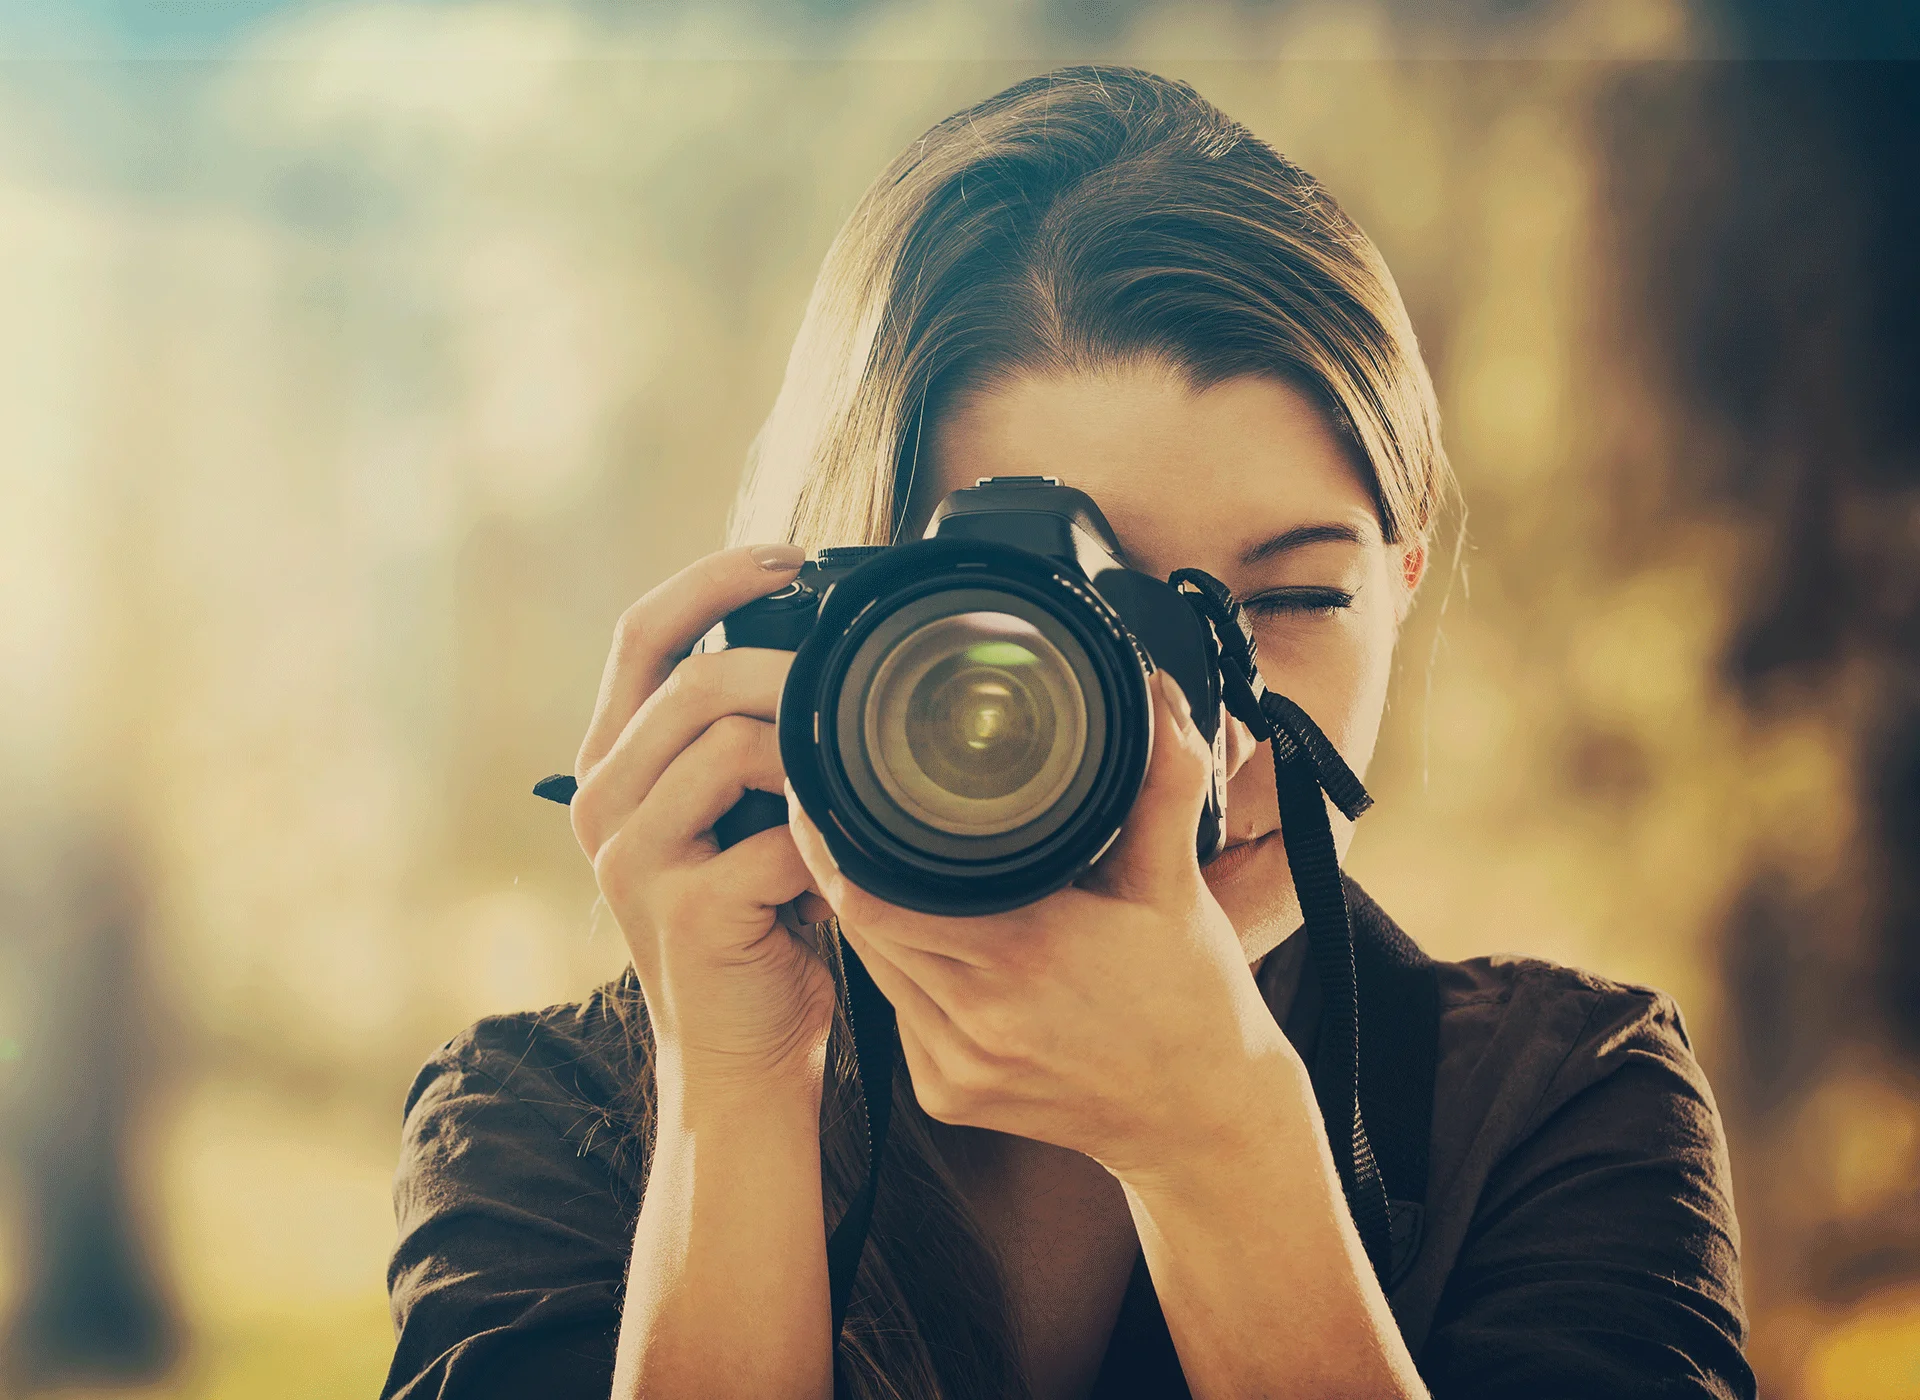 Imagen en primer plano de una fotógrafa y su cámara mientras hace una foto.